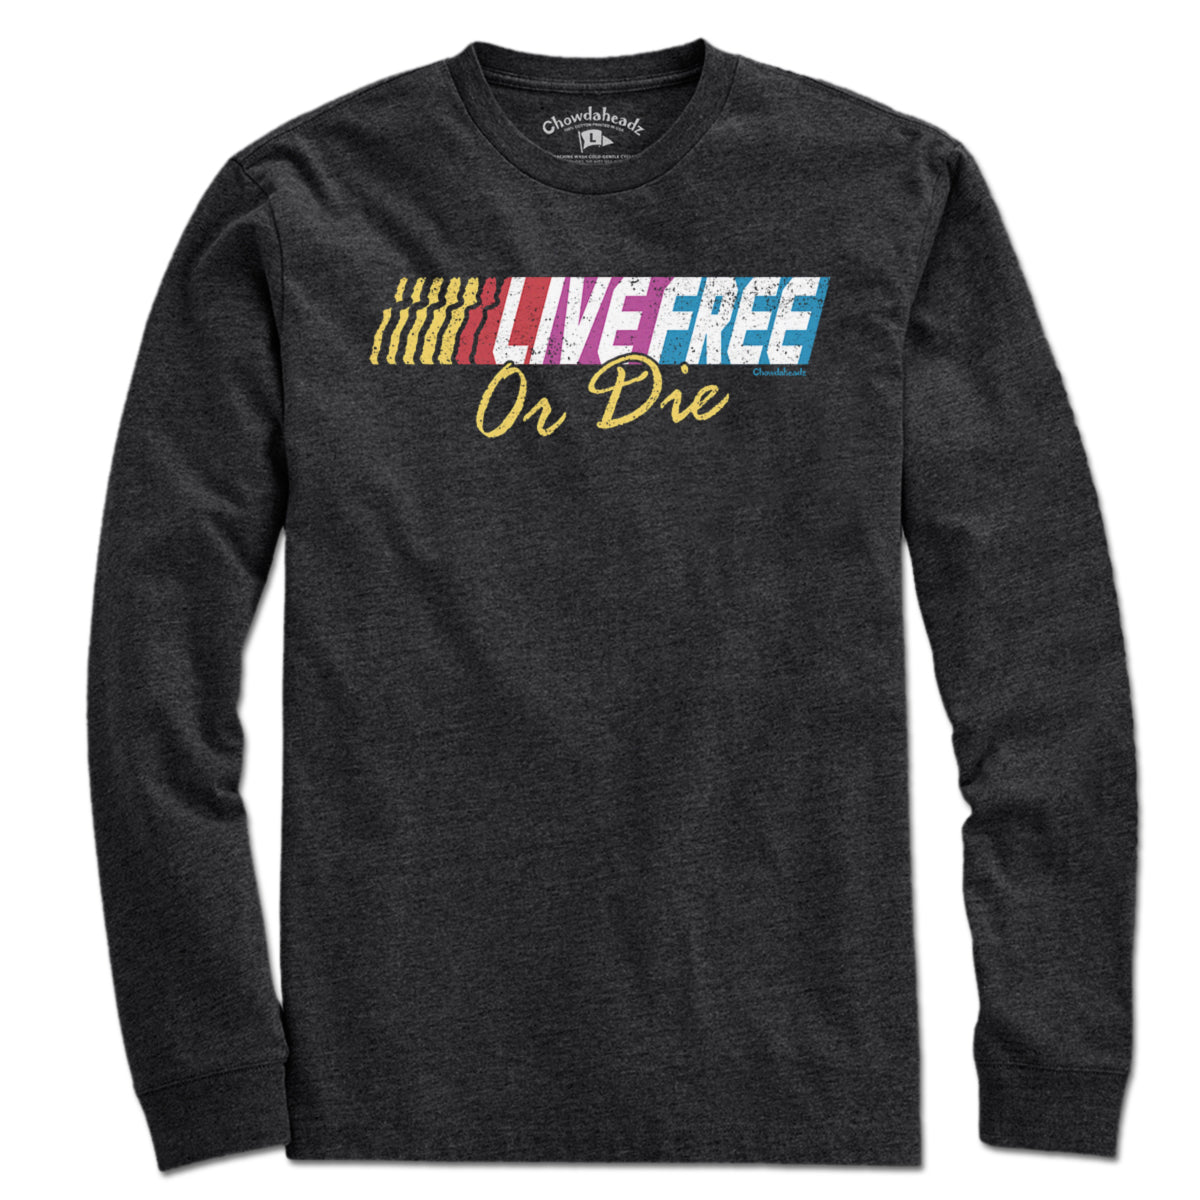 Live Free Or Die Fastlane T-Shirt - Chowdaheadz